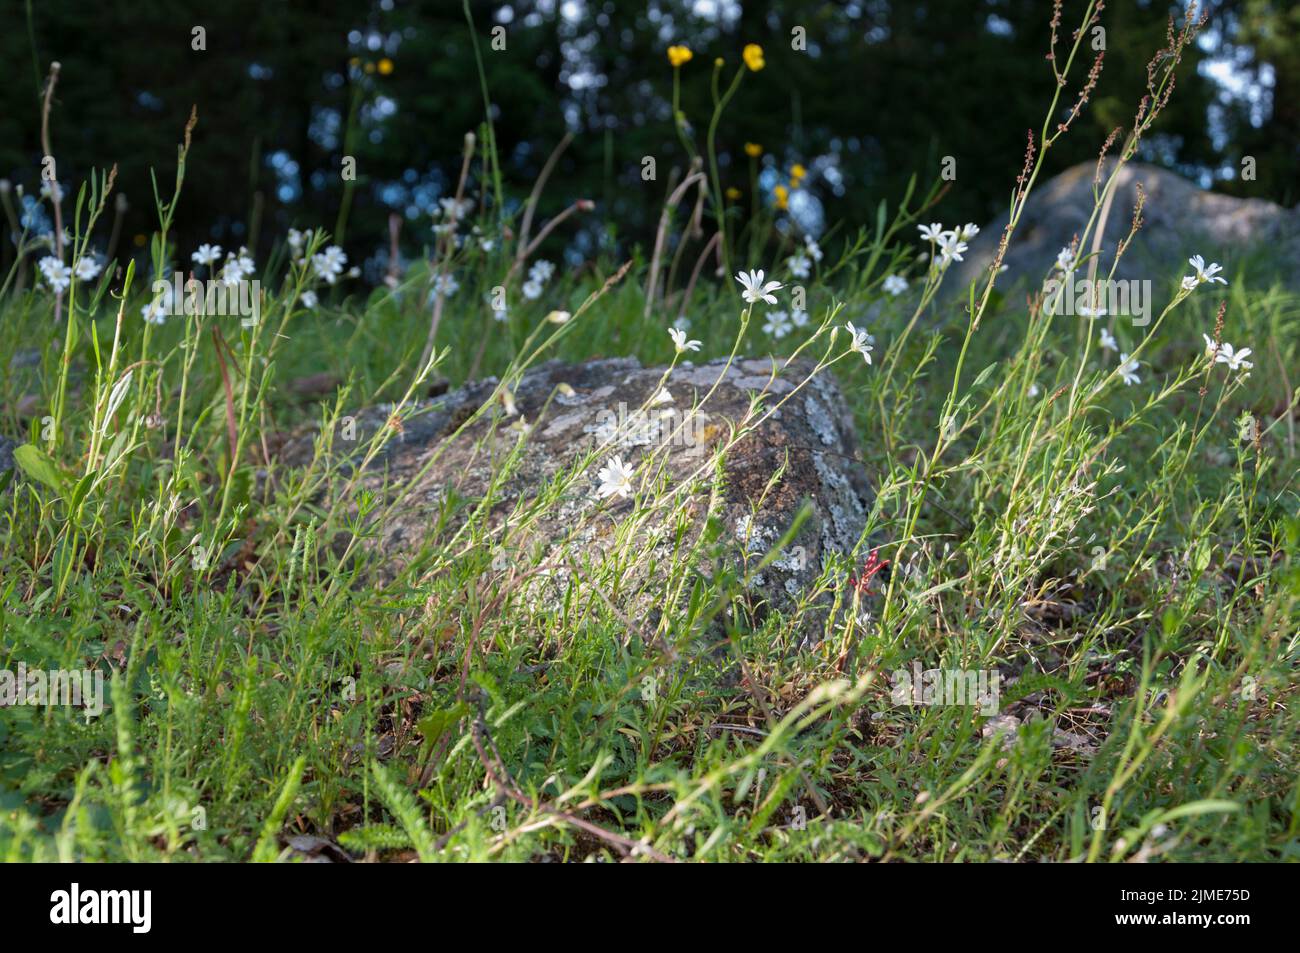 Finnish Wild Flowers/Chickweed Stock Photo